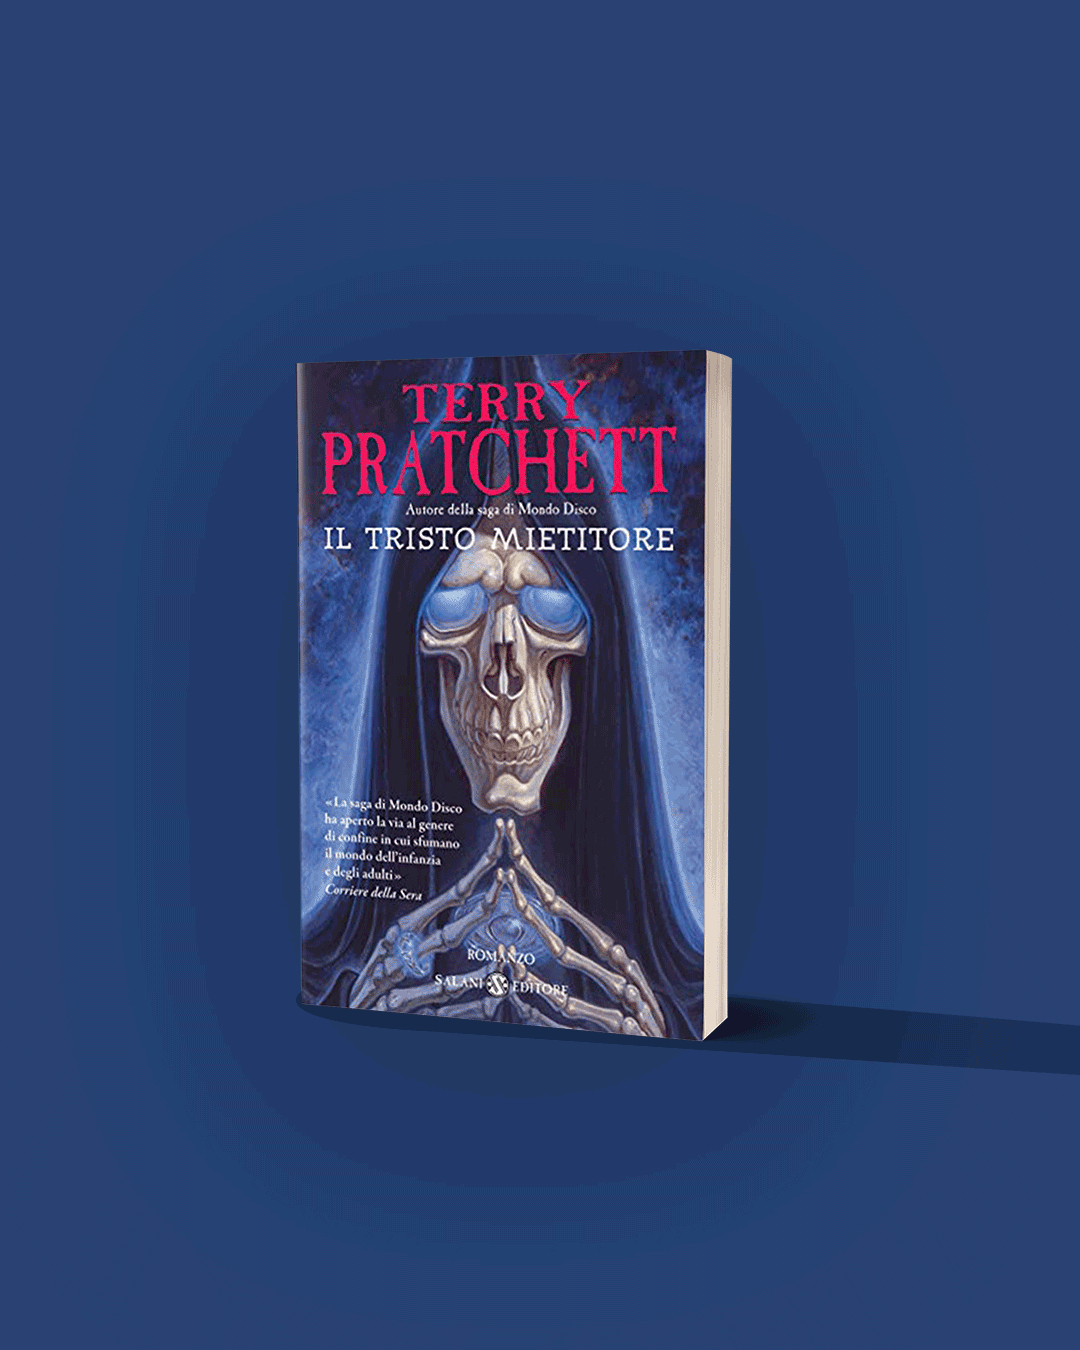 Umorismo libri fantasy: Terry Pratchett, Il tristo mietitore